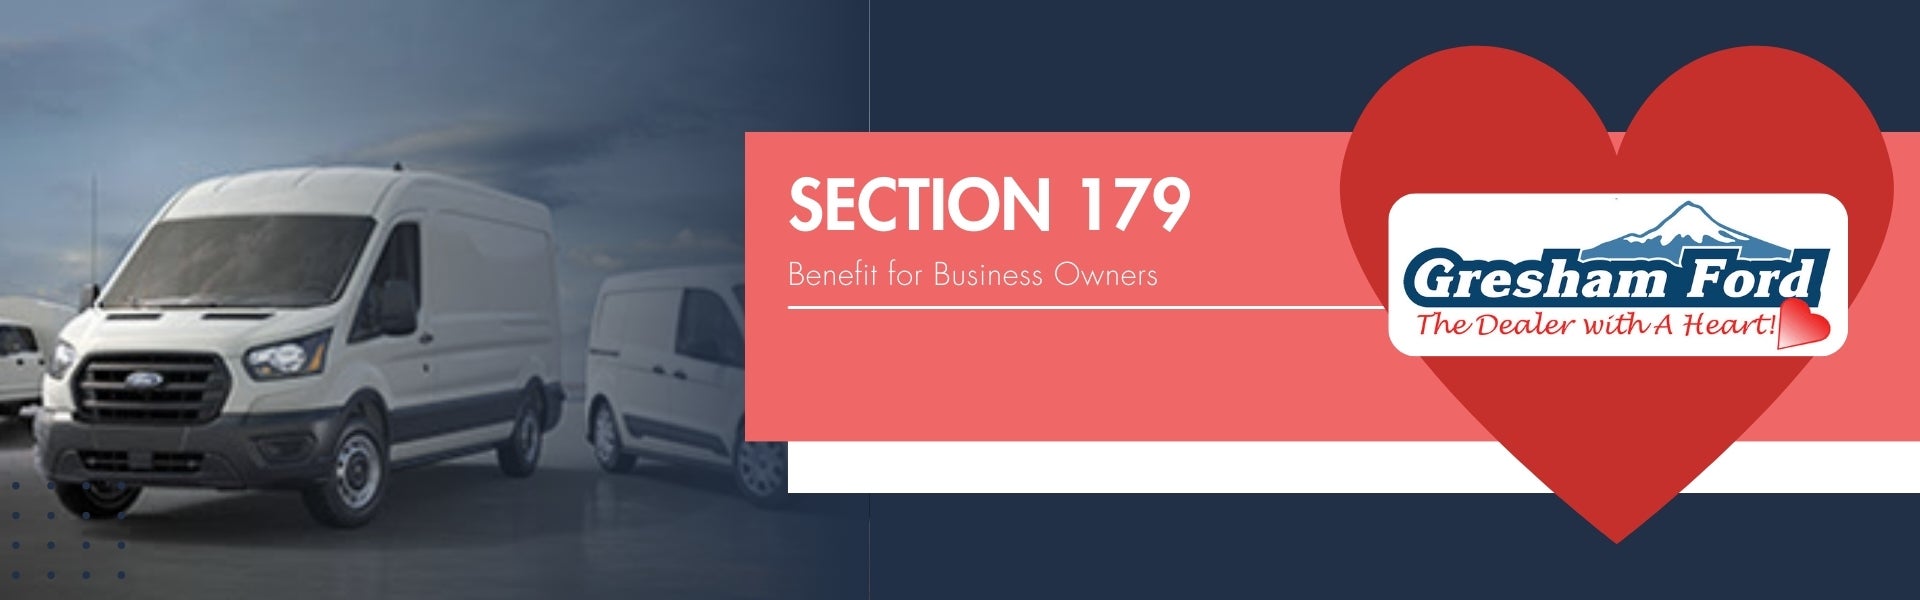 Section 179 Commercial Vehicles at Gresham Ford, Oregon Ford Dealer